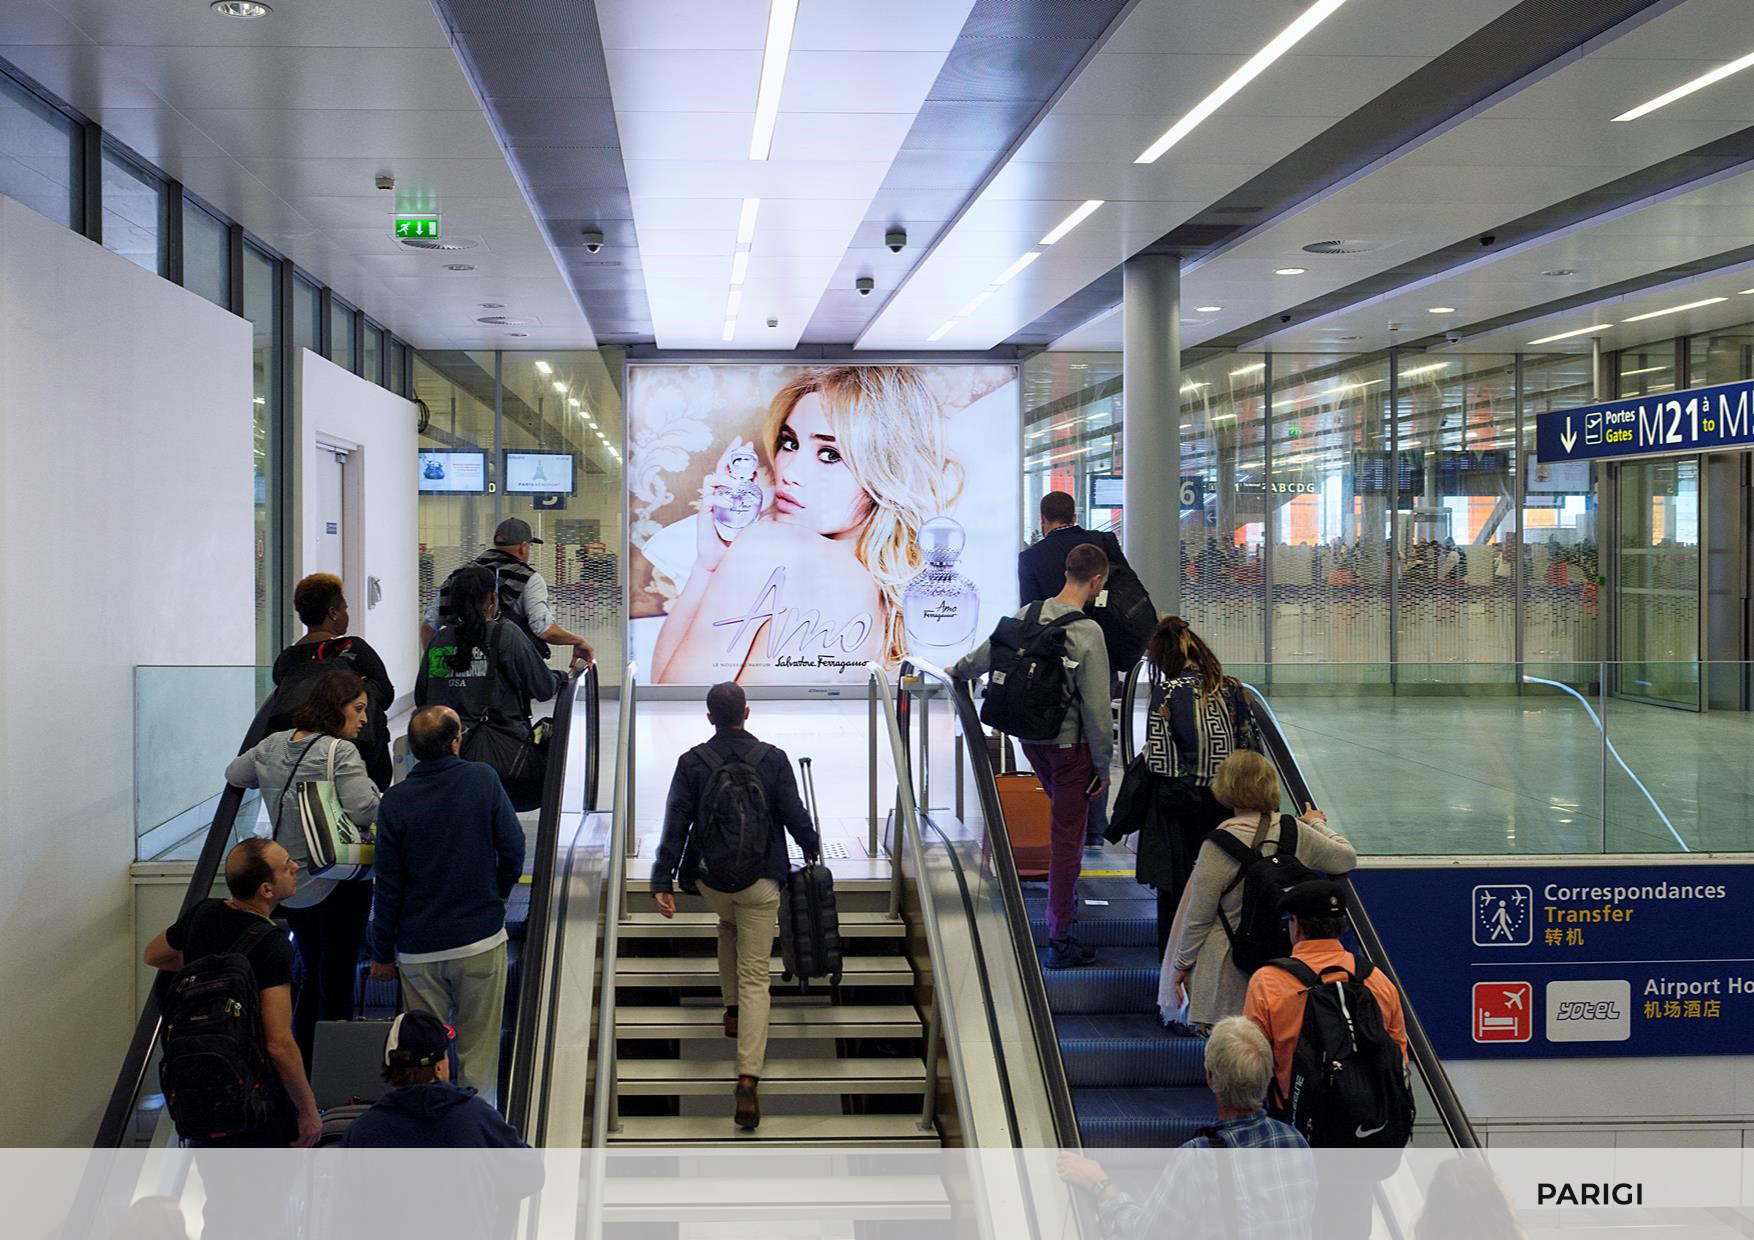 Impianto pubblicitario di alta qualità all'interno dell'Aeroporto di Parigi.